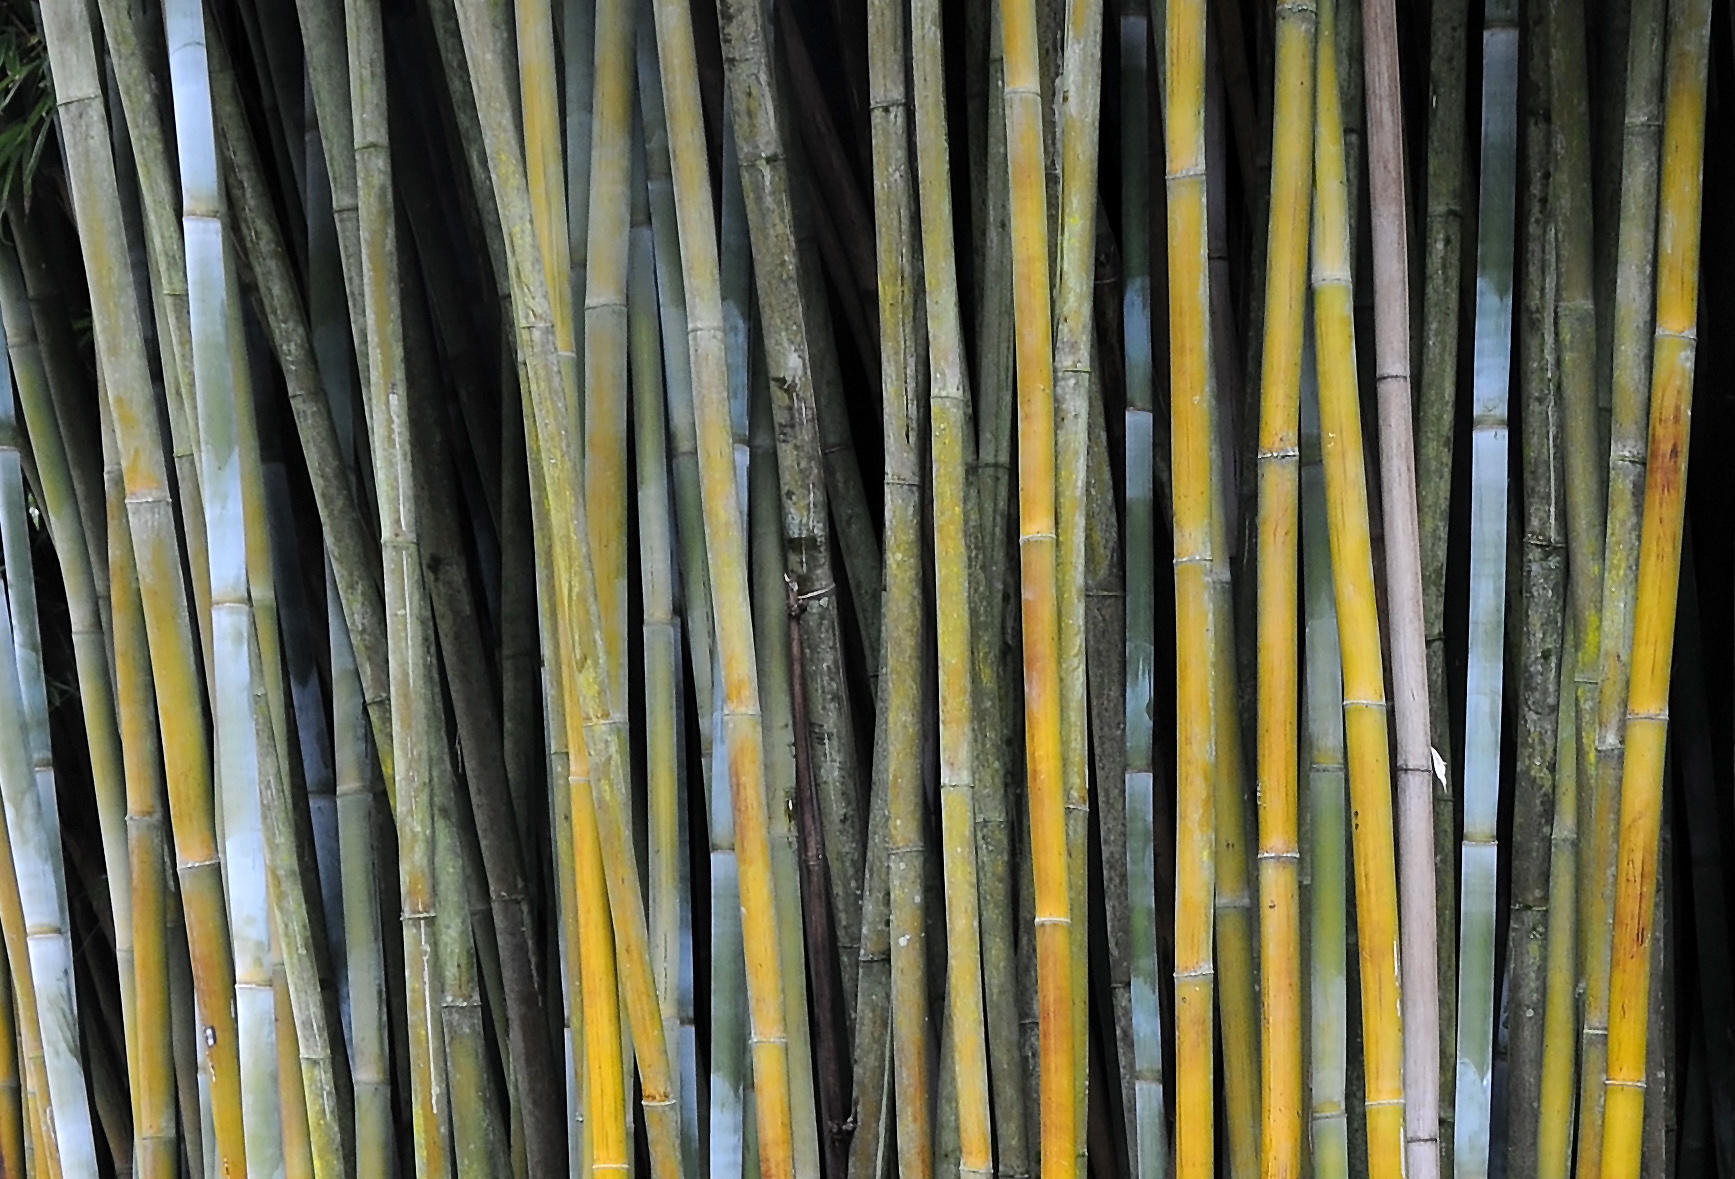 Kanapaha Bamboo